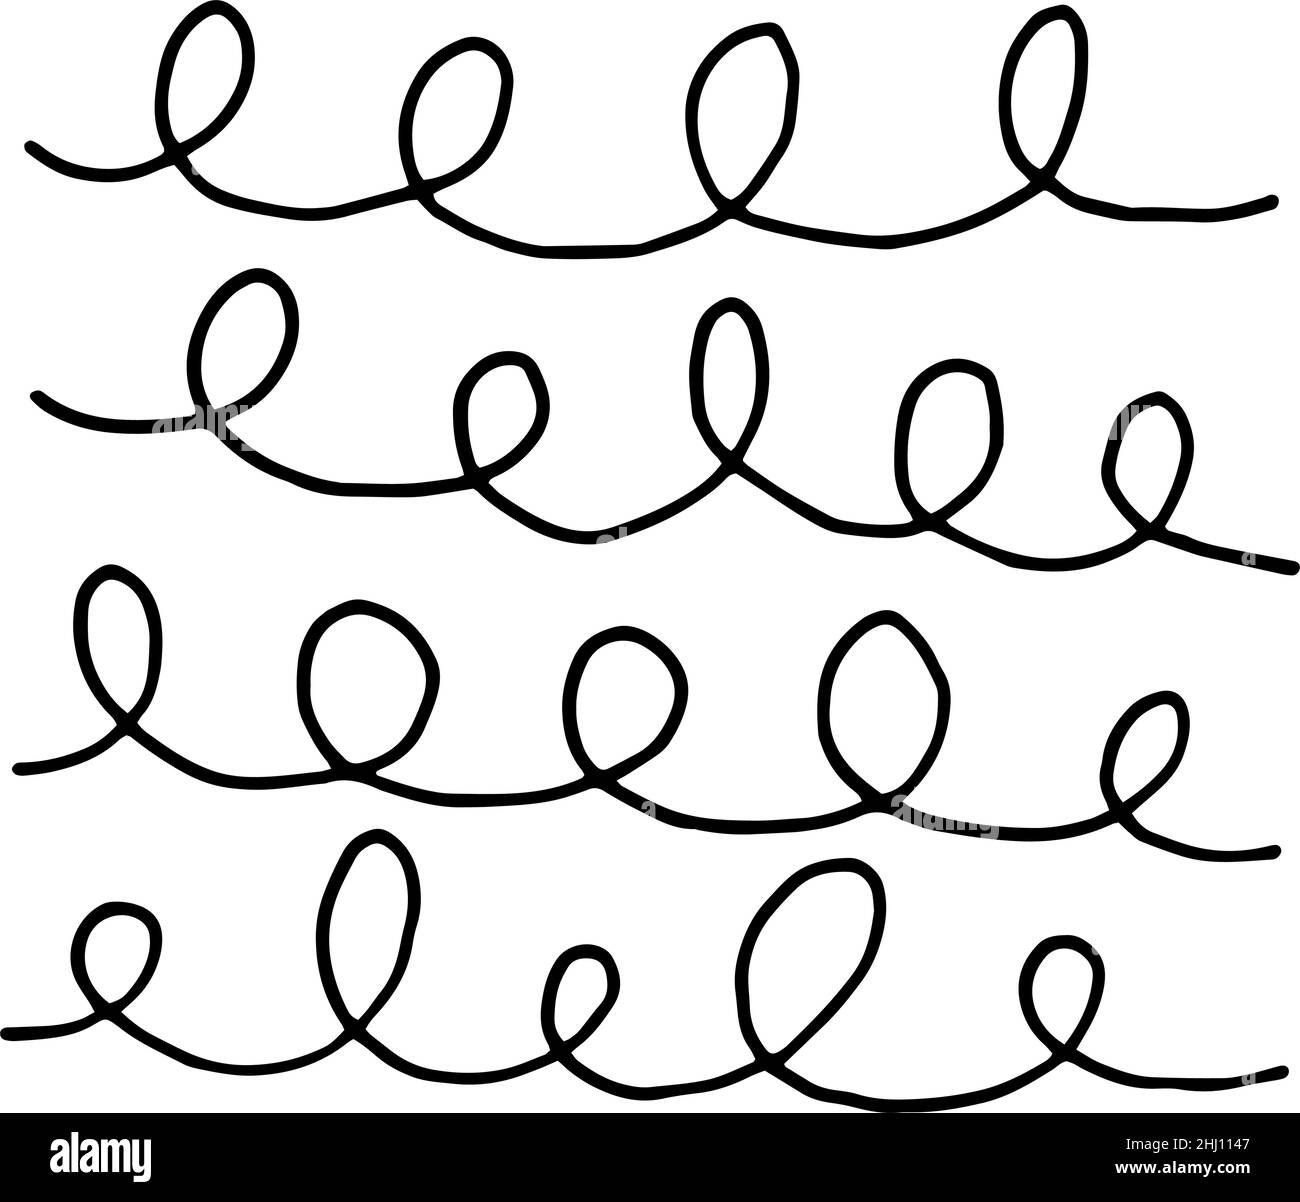 Abstraktes, von Hand gezeichnetes monochromes einfaches Doodle-Vektor-Muster von Looping-Linien. Wirbelte schwarze Linien auf weißem Hintergrund Stock Vektor